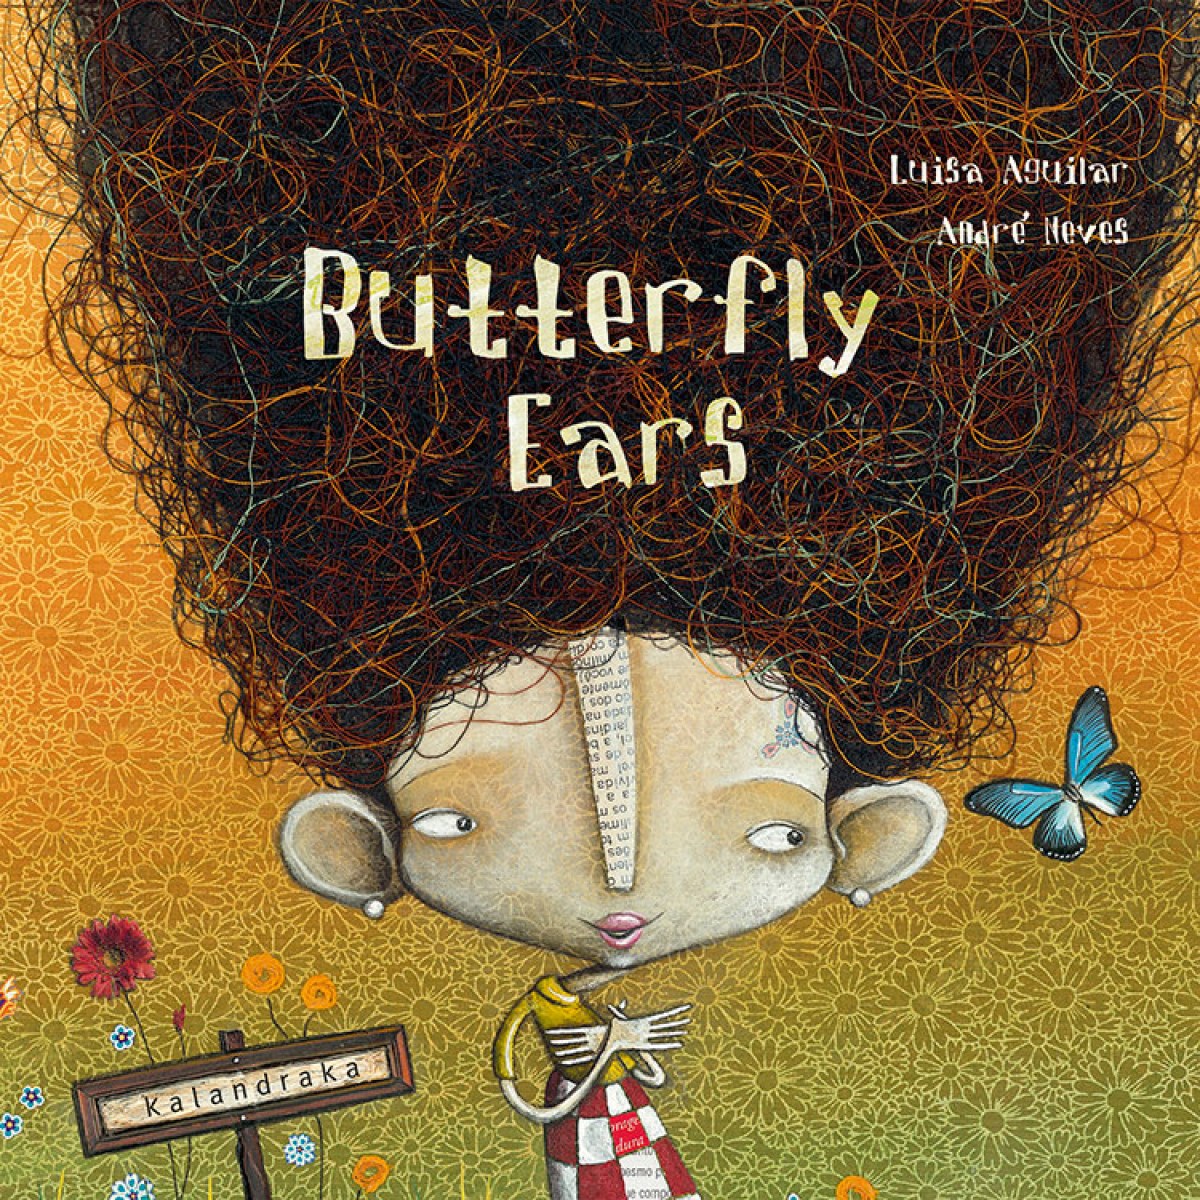 Butterfly ears - Aguilar, Luisa